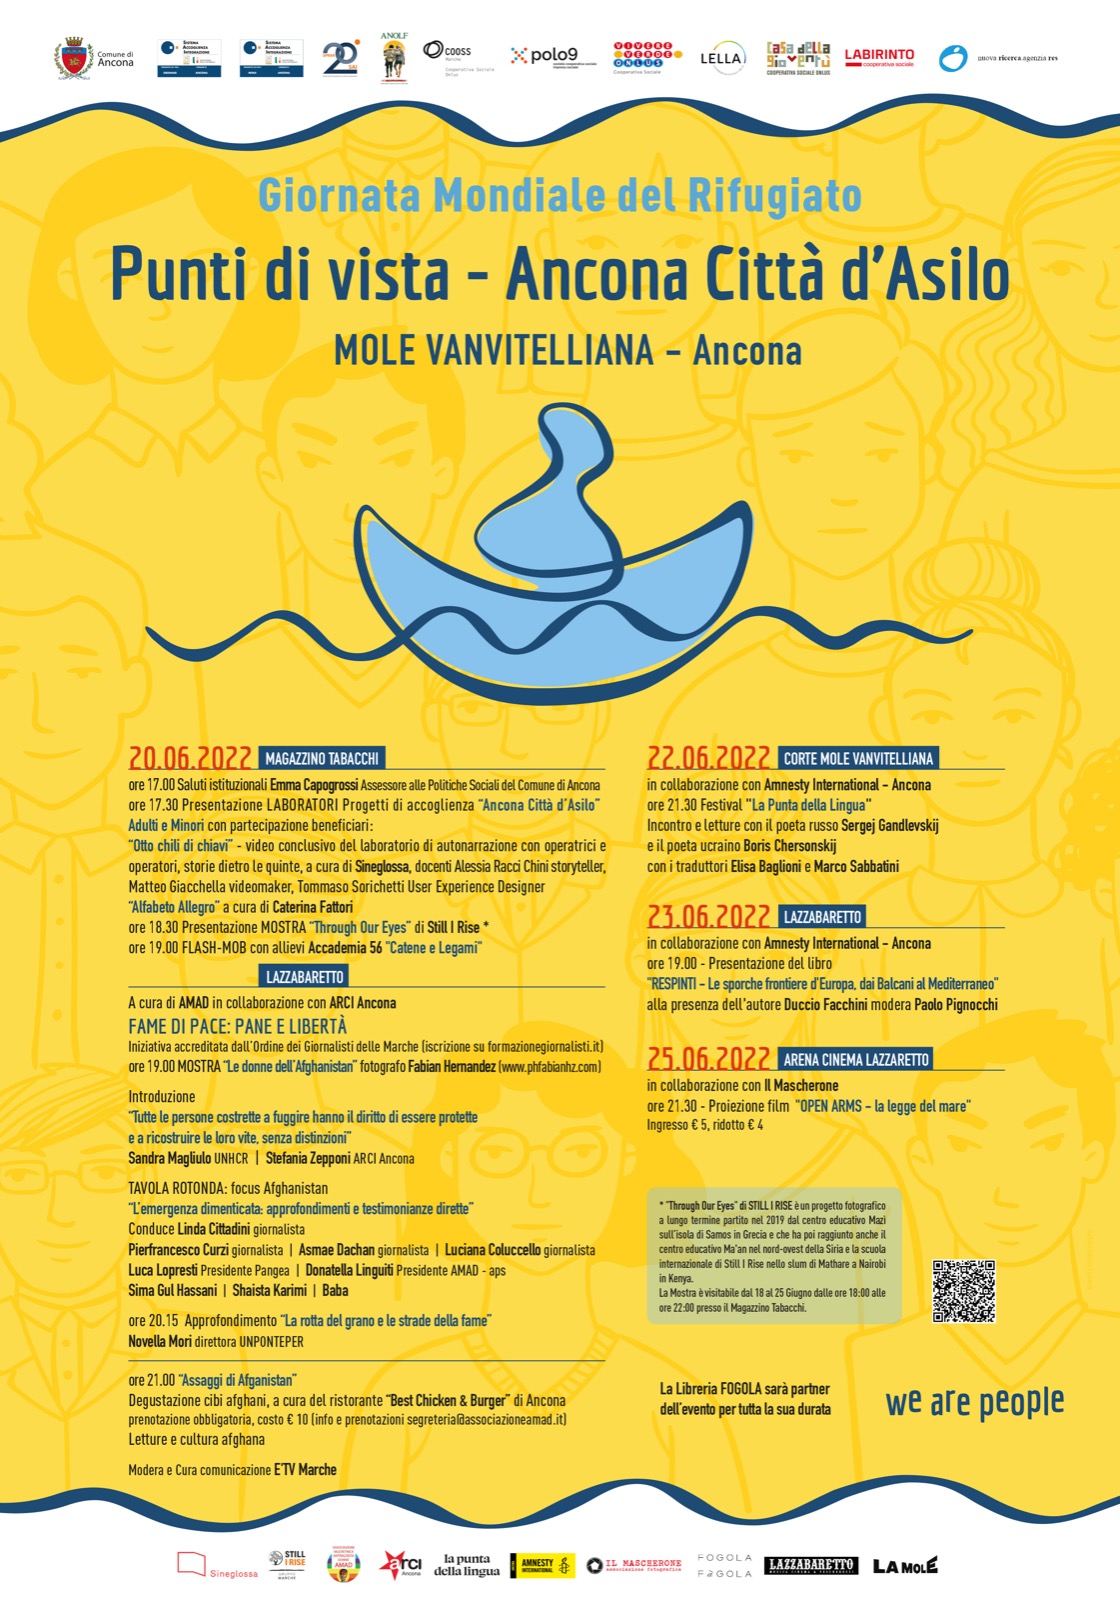 Giornata mondiale del Rifugiato “Punti di vista – Ancona città d’asilo”